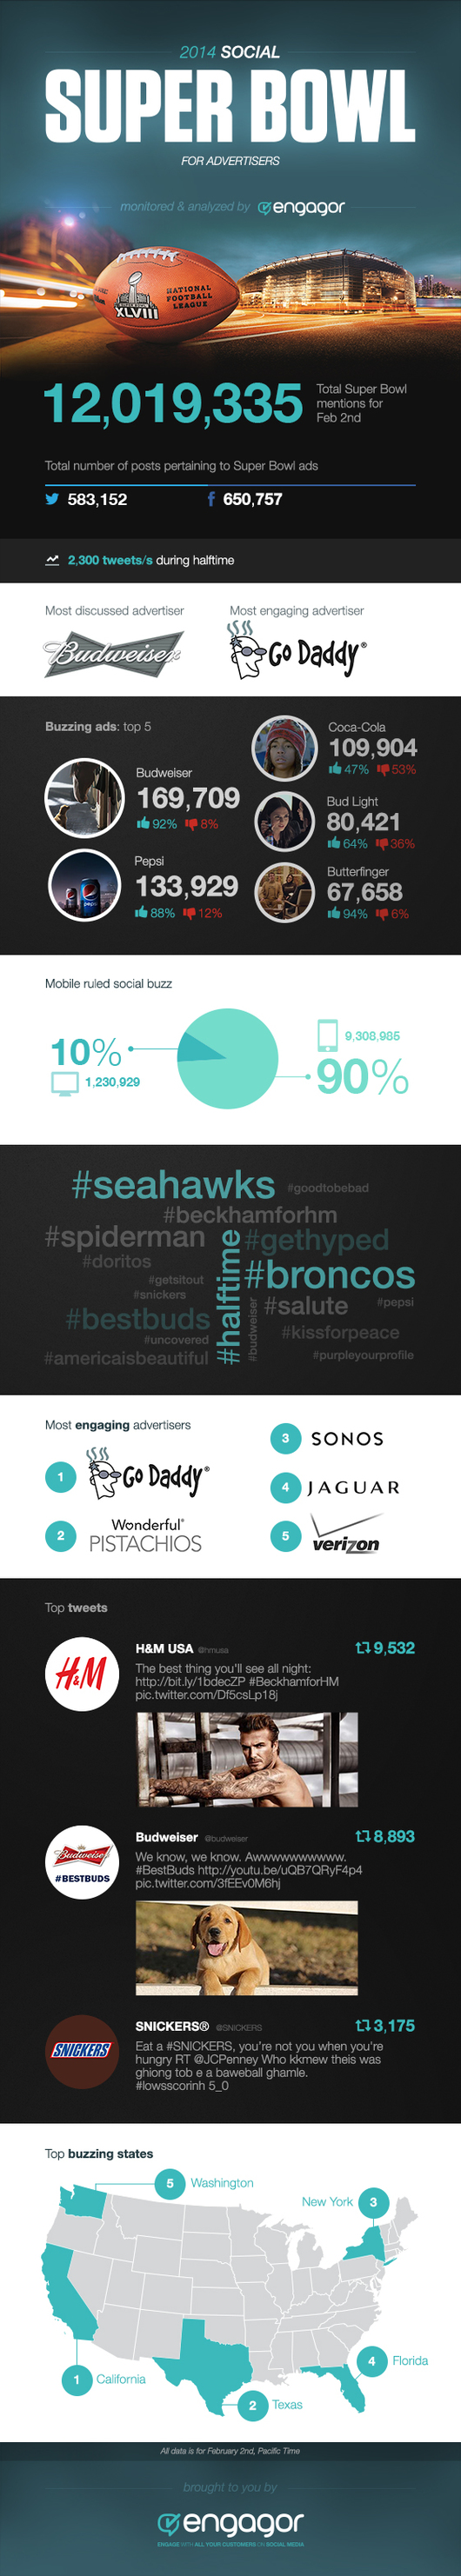 engagor_sb_2014_infographic.jpg